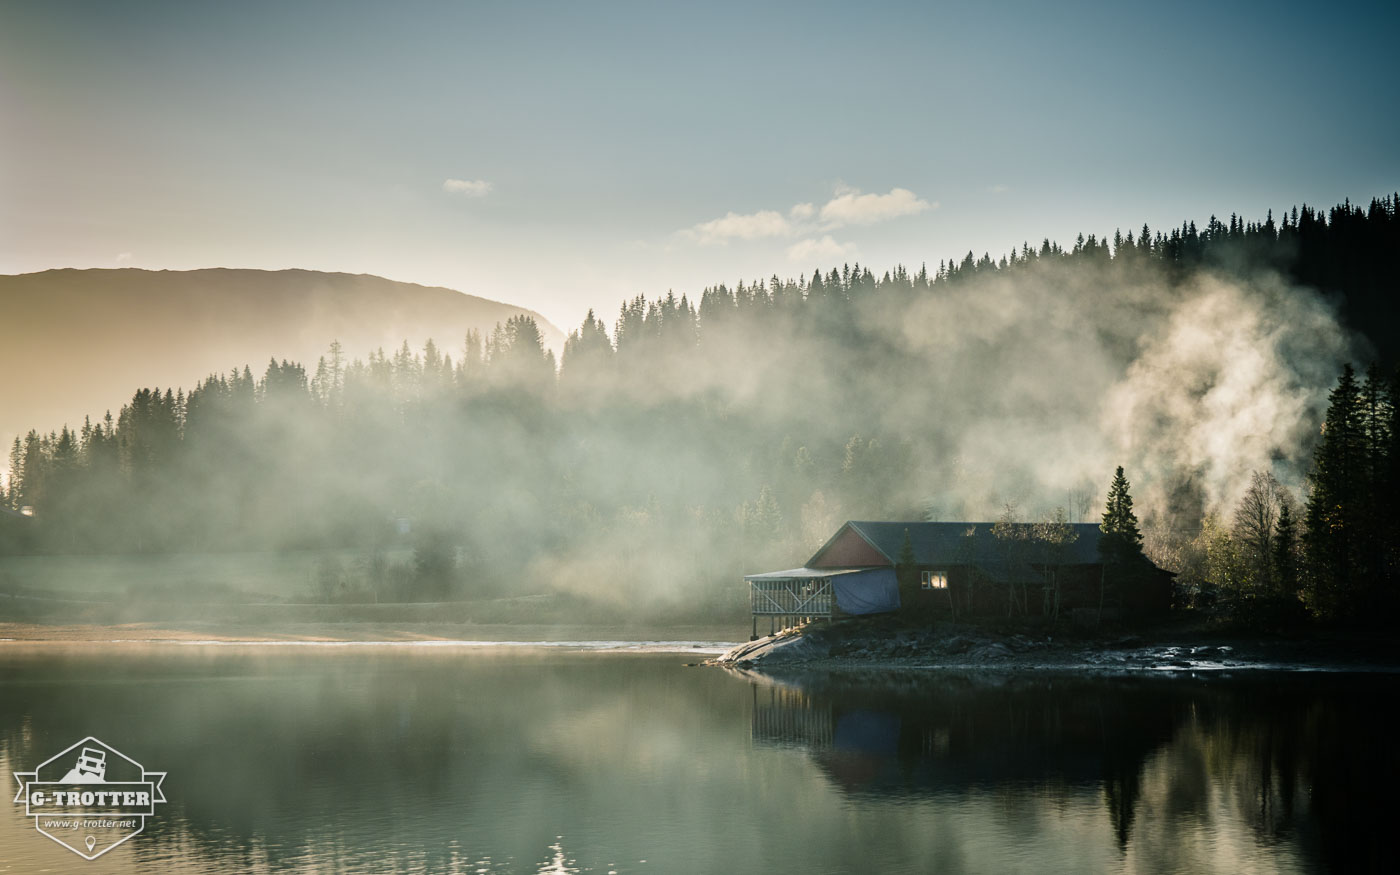 Bild 26 der Bildergalerie “4700 km durch Norwegen”